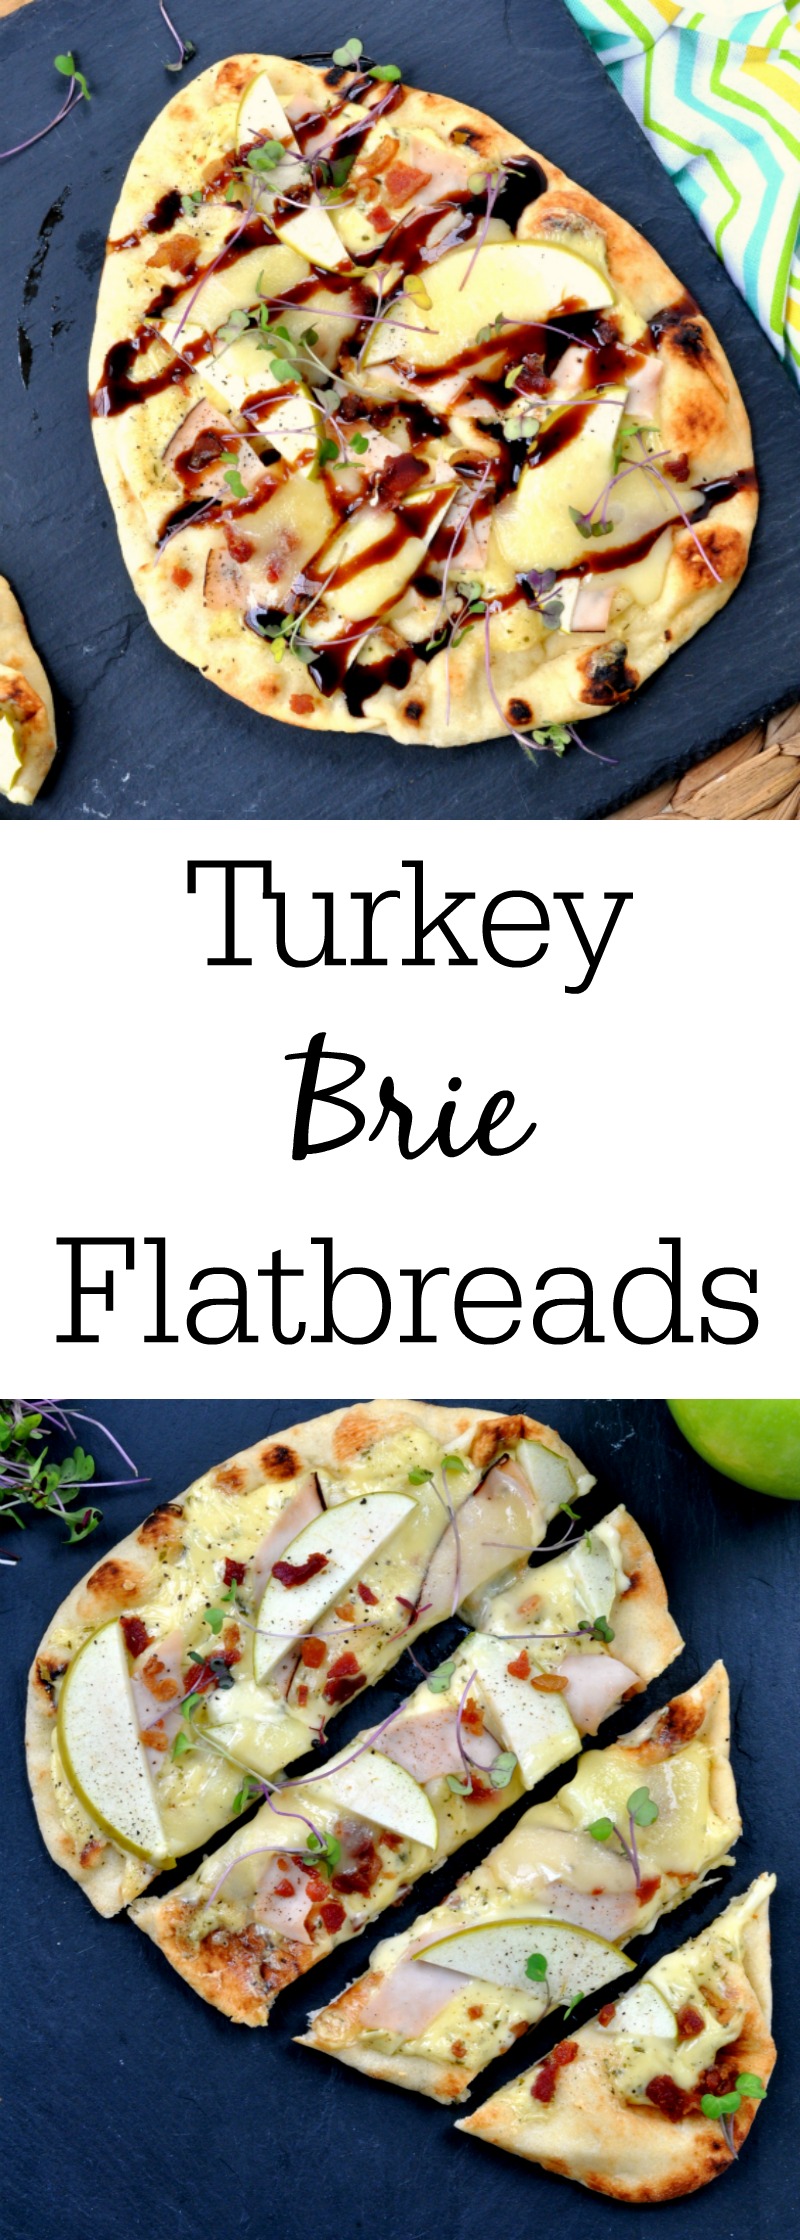 Turkey Apple Brie Flatbread